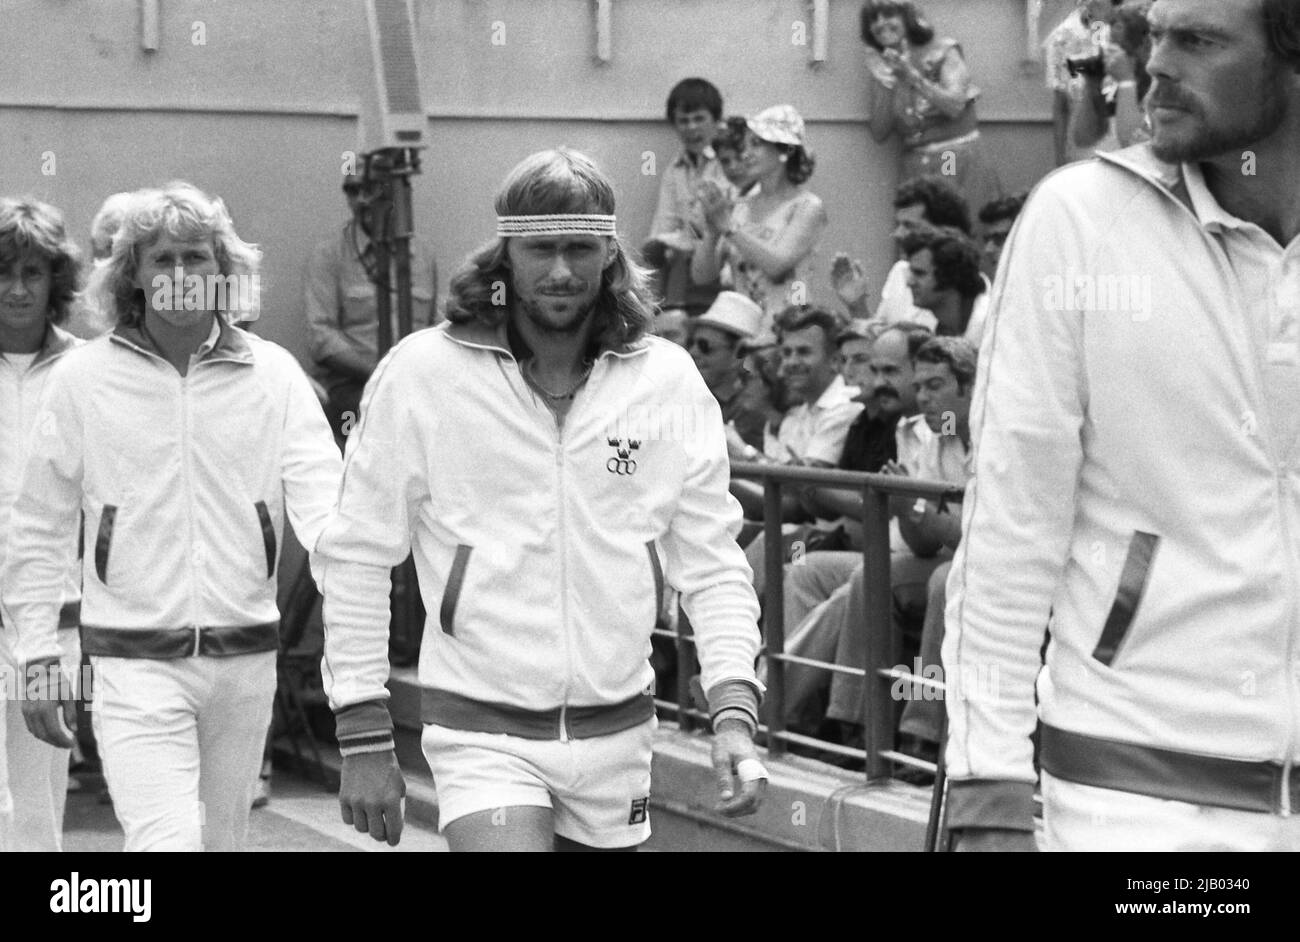 Bucarest, Roumanie, 1979. L'équipe suédoise entre dans l'arène pour un match contre la Roumanie dans le tournoi de tennis de la coupe Davis. Deuxième à droite, le célèbre joueur Bjorn Borg. Banque D'Images